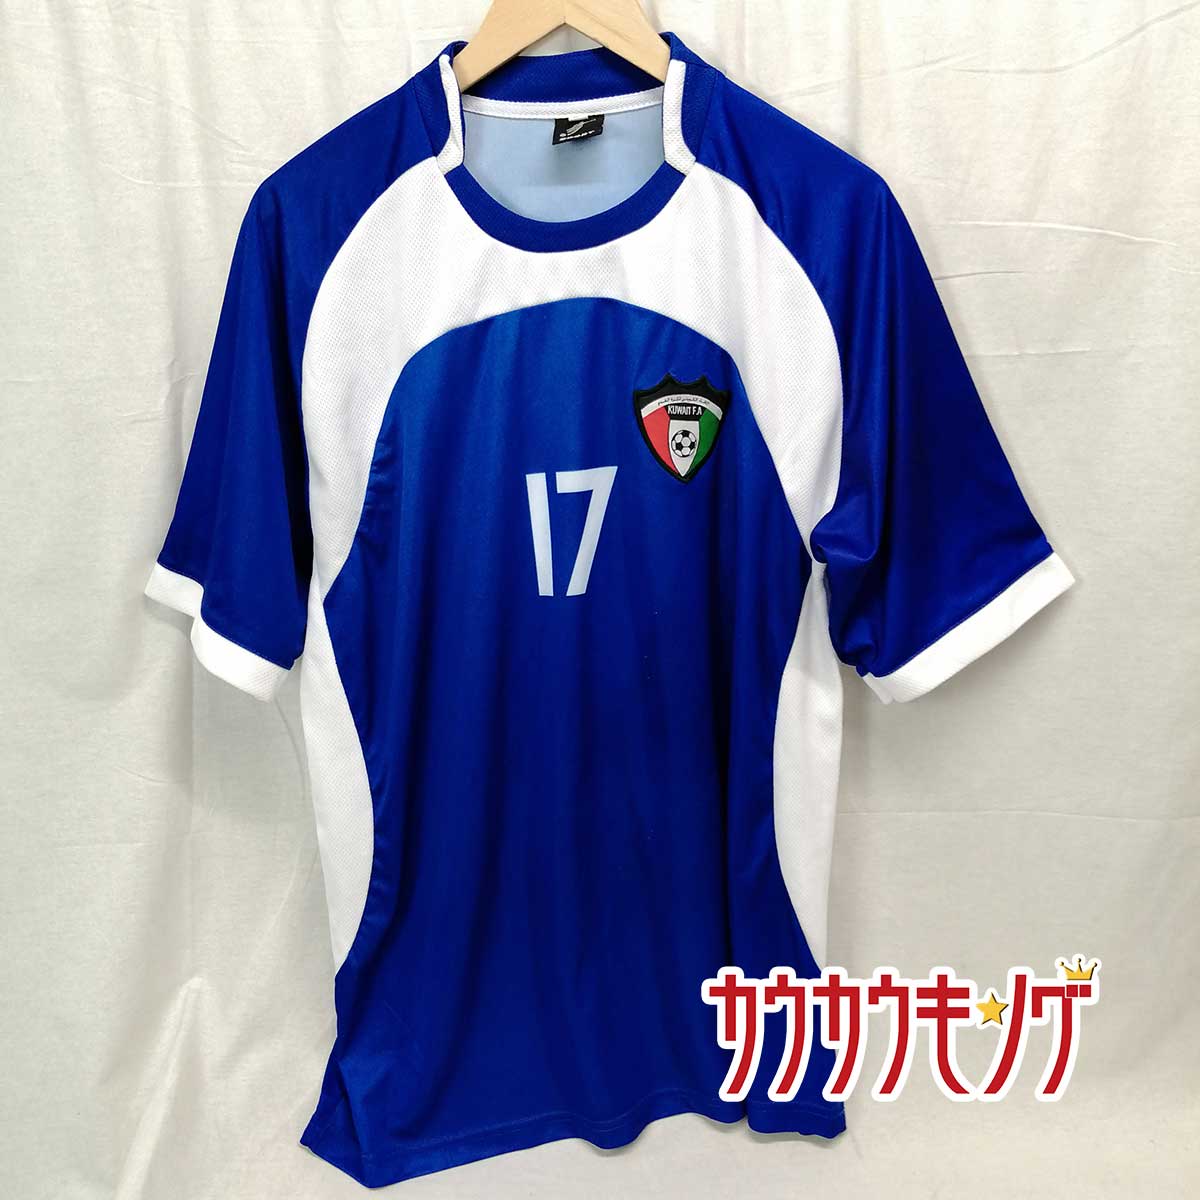 【中古】サッカー クウェート代表 KUWAIT F.A ユニフォーム #17 サイズXL サッカーウェア